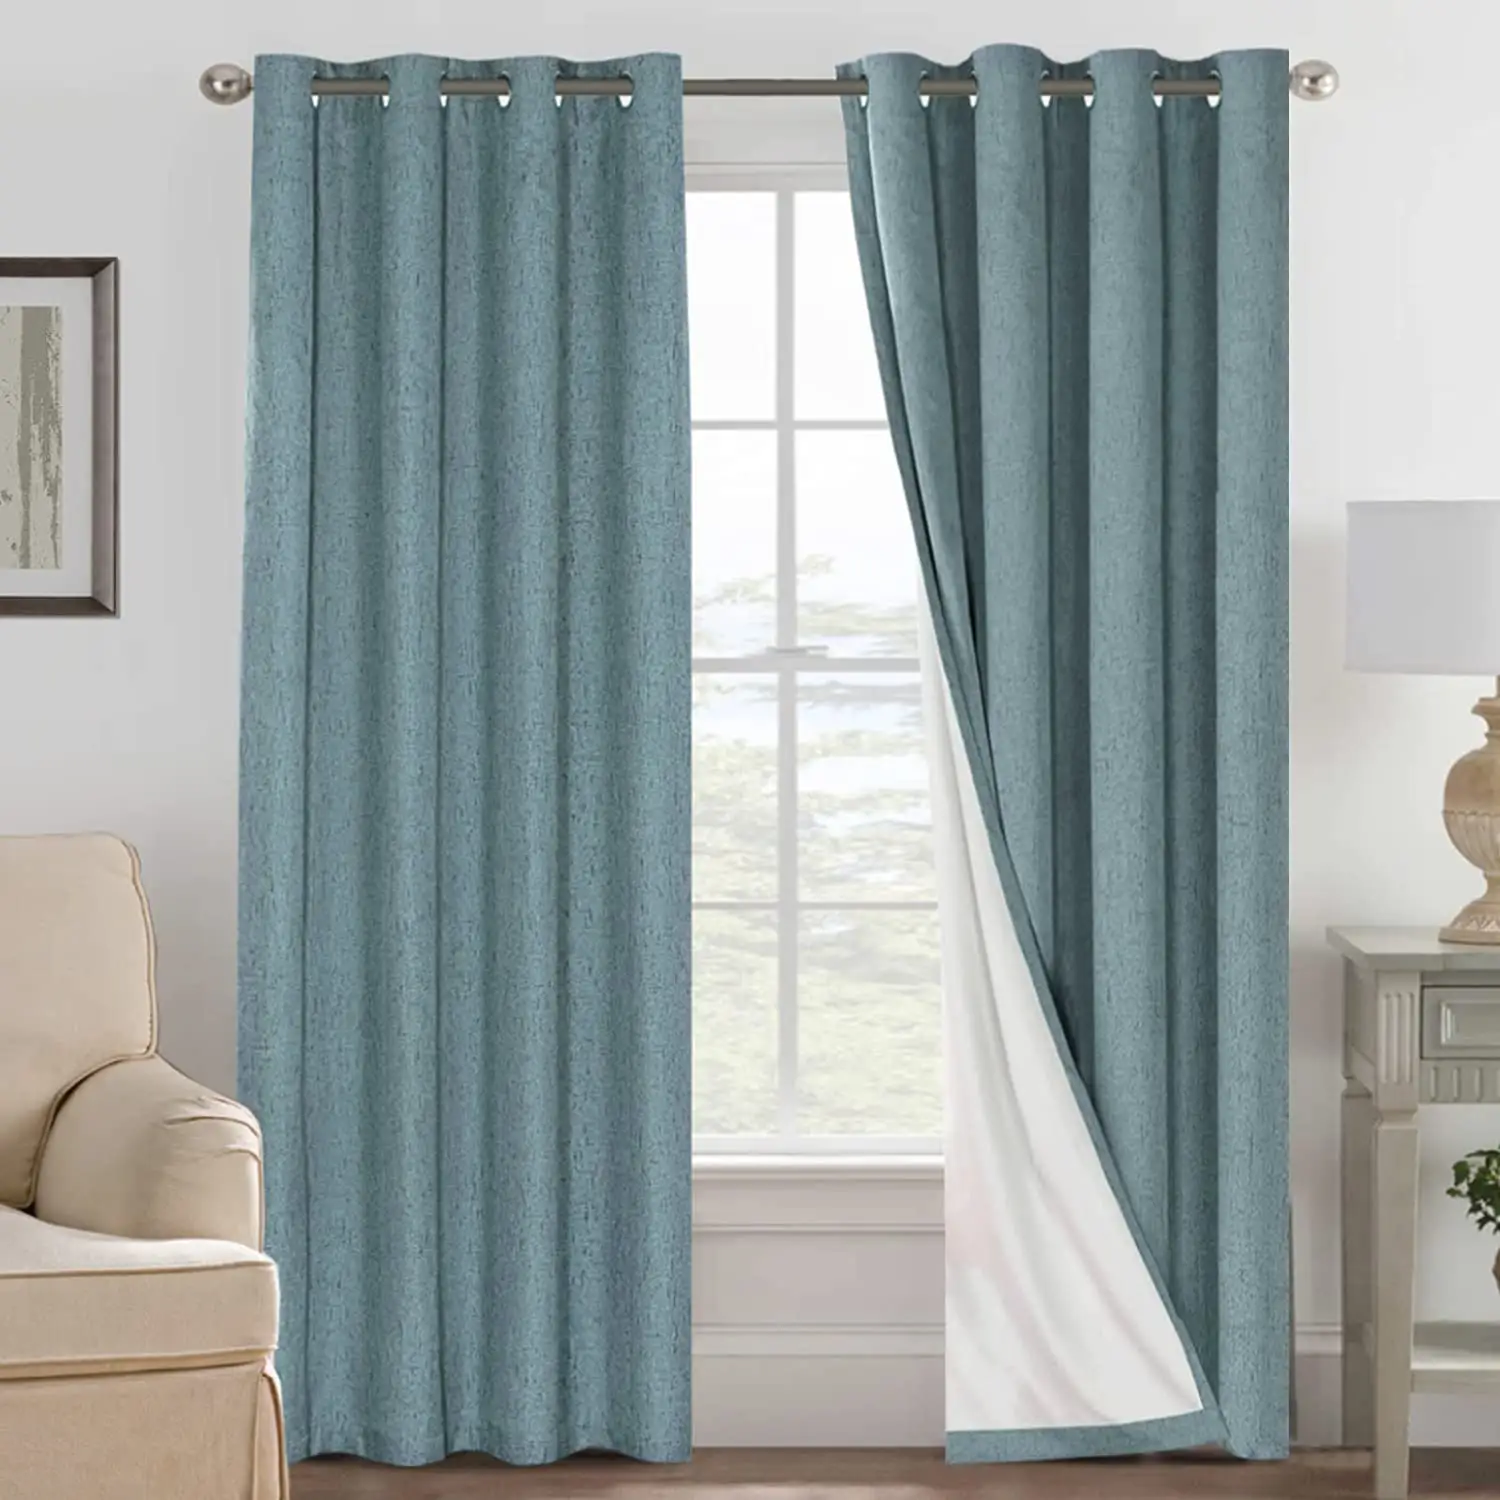 Cortinas de lino texturizadas Bindi 108 pulgadas de largo 100% poliéster cortinas negras para ventanas de habitaciones